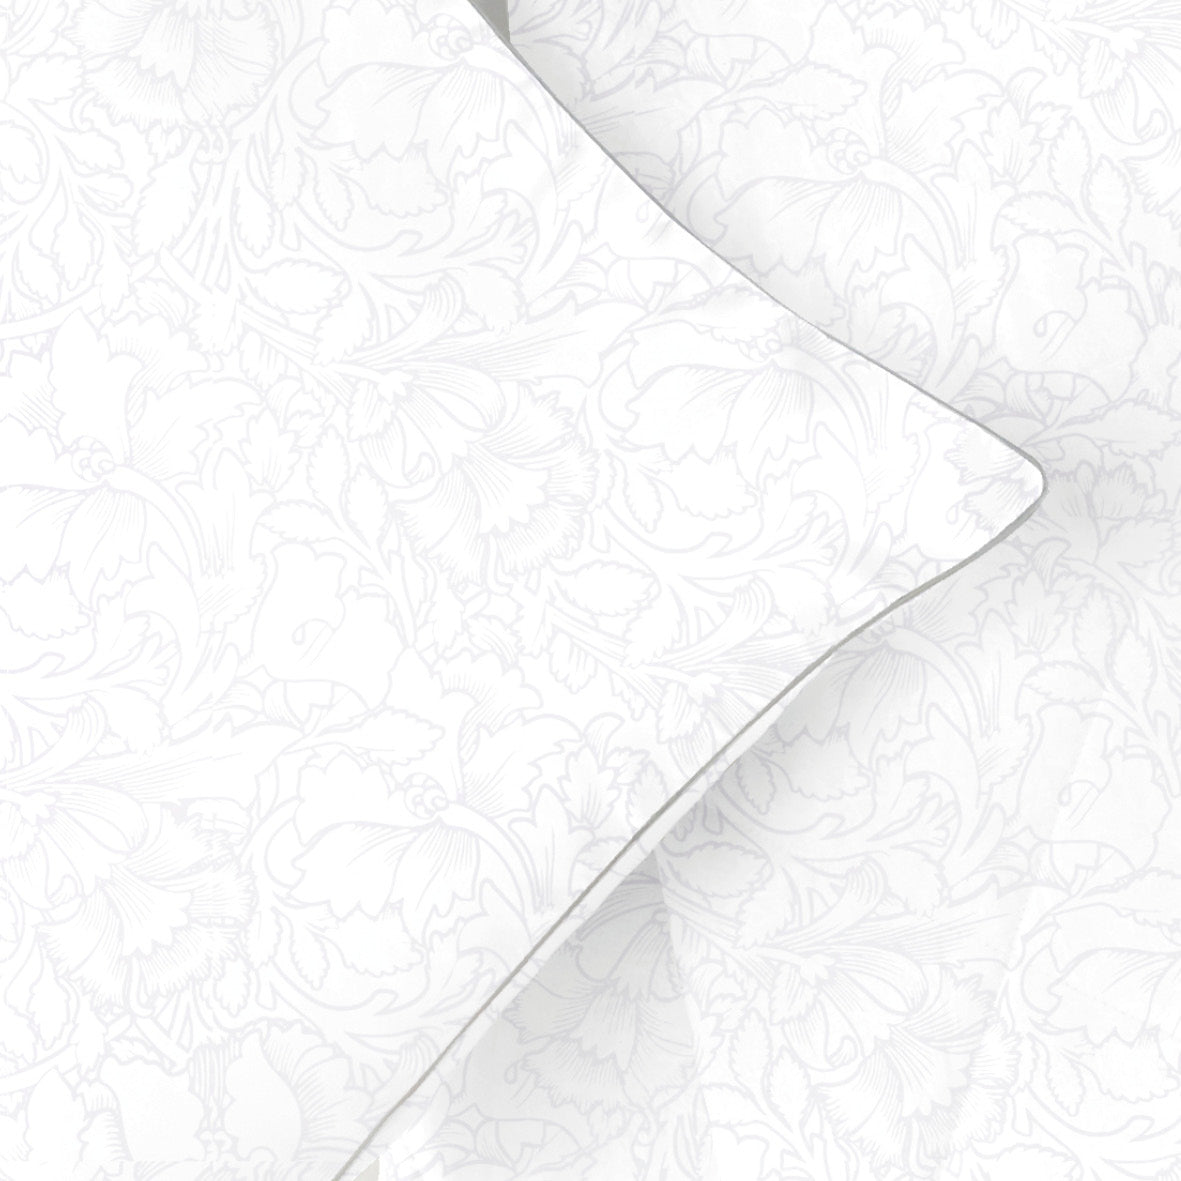 Pillowcase cotton satin - Arabesque White